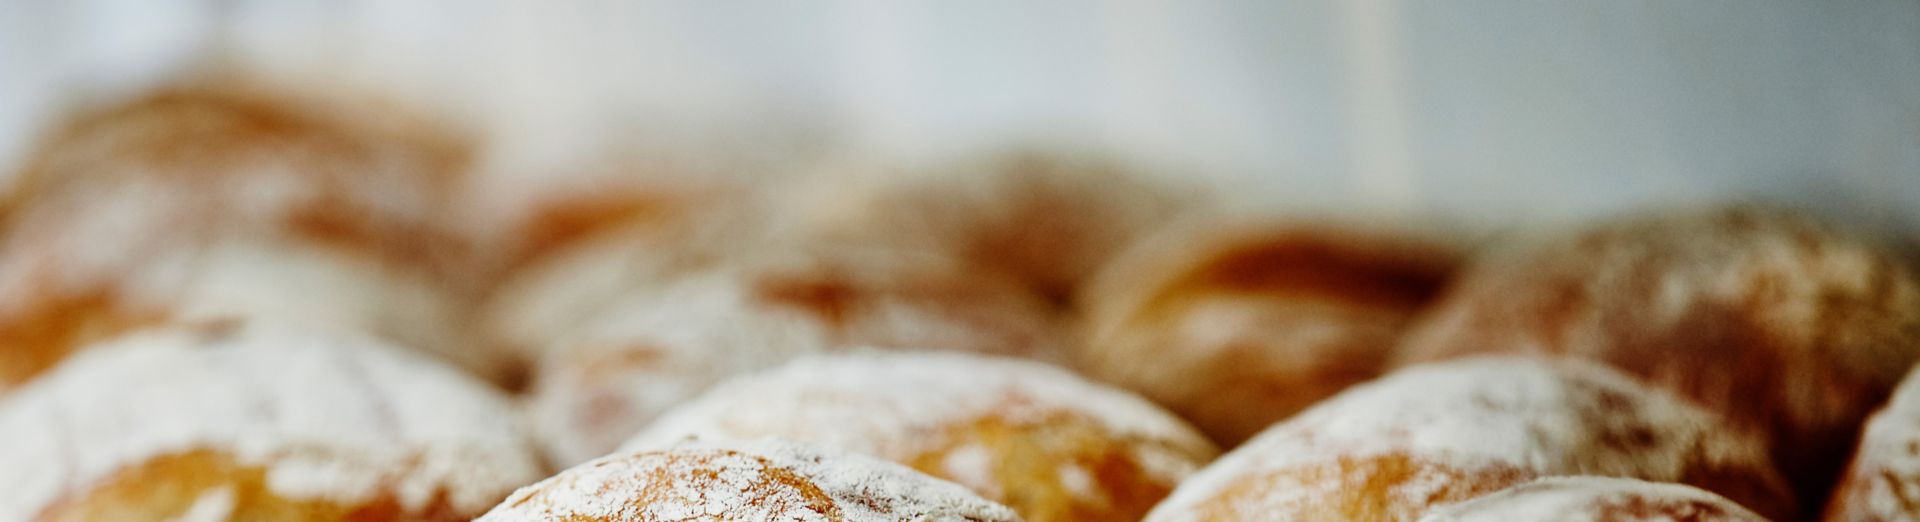 Imagen de un pan en el estante de una panadería